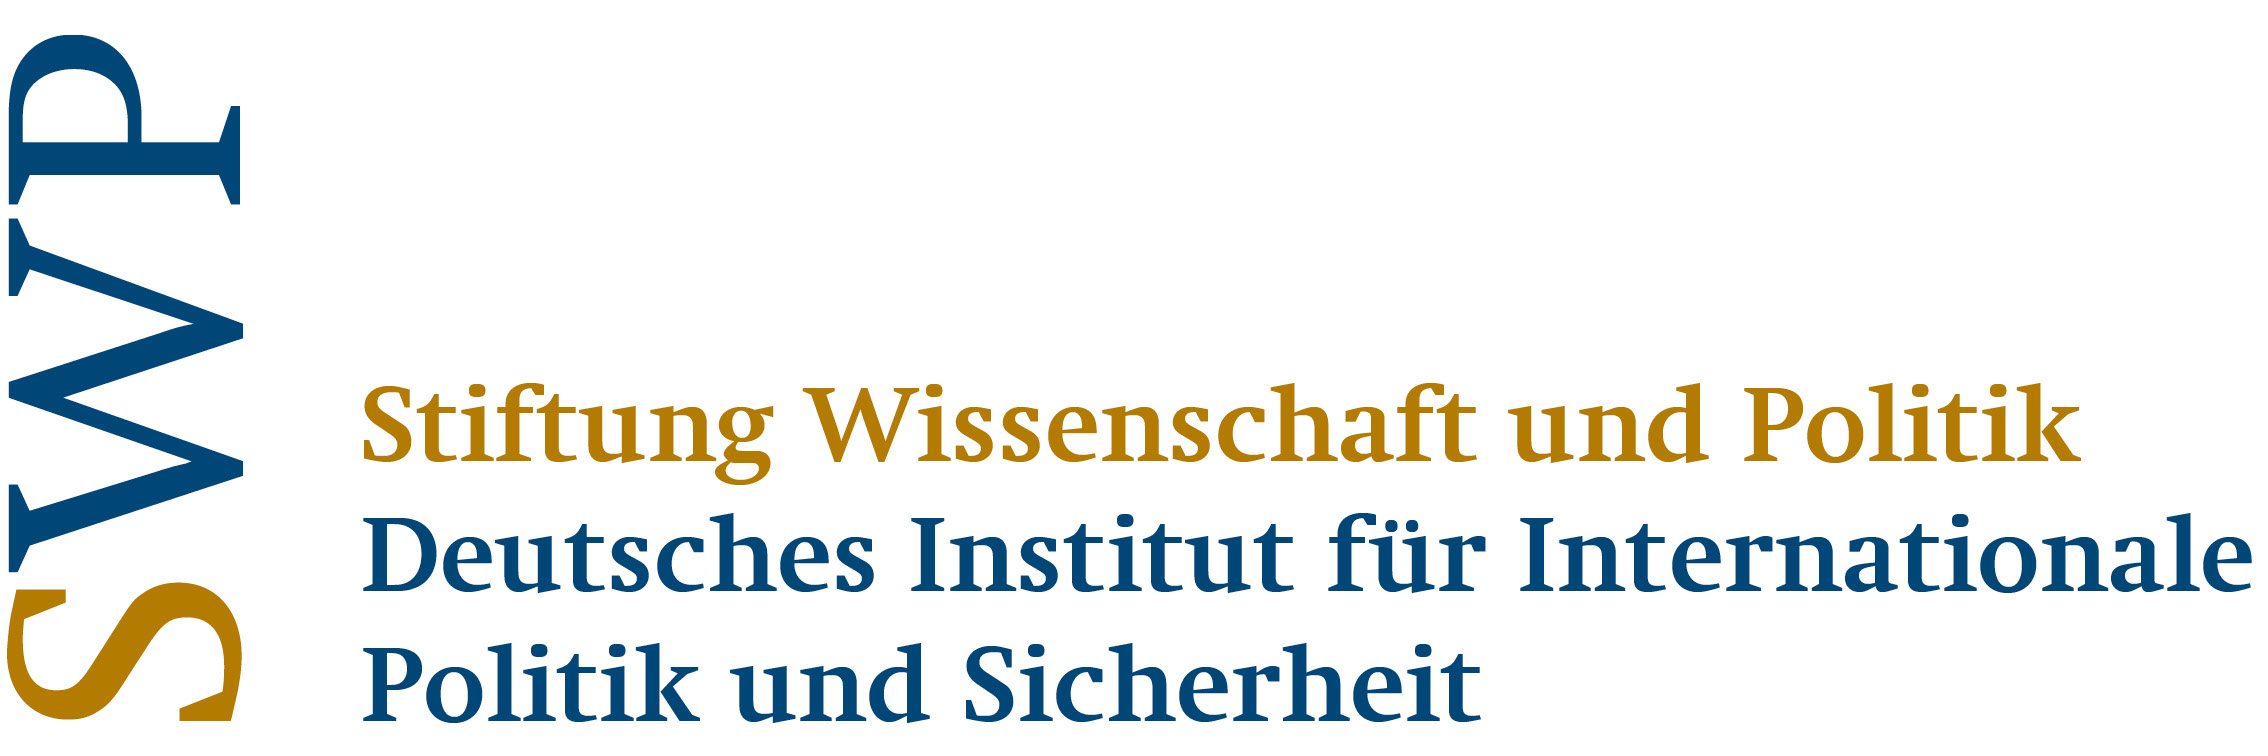 Logo Stiftung Wissenschaft und Politik